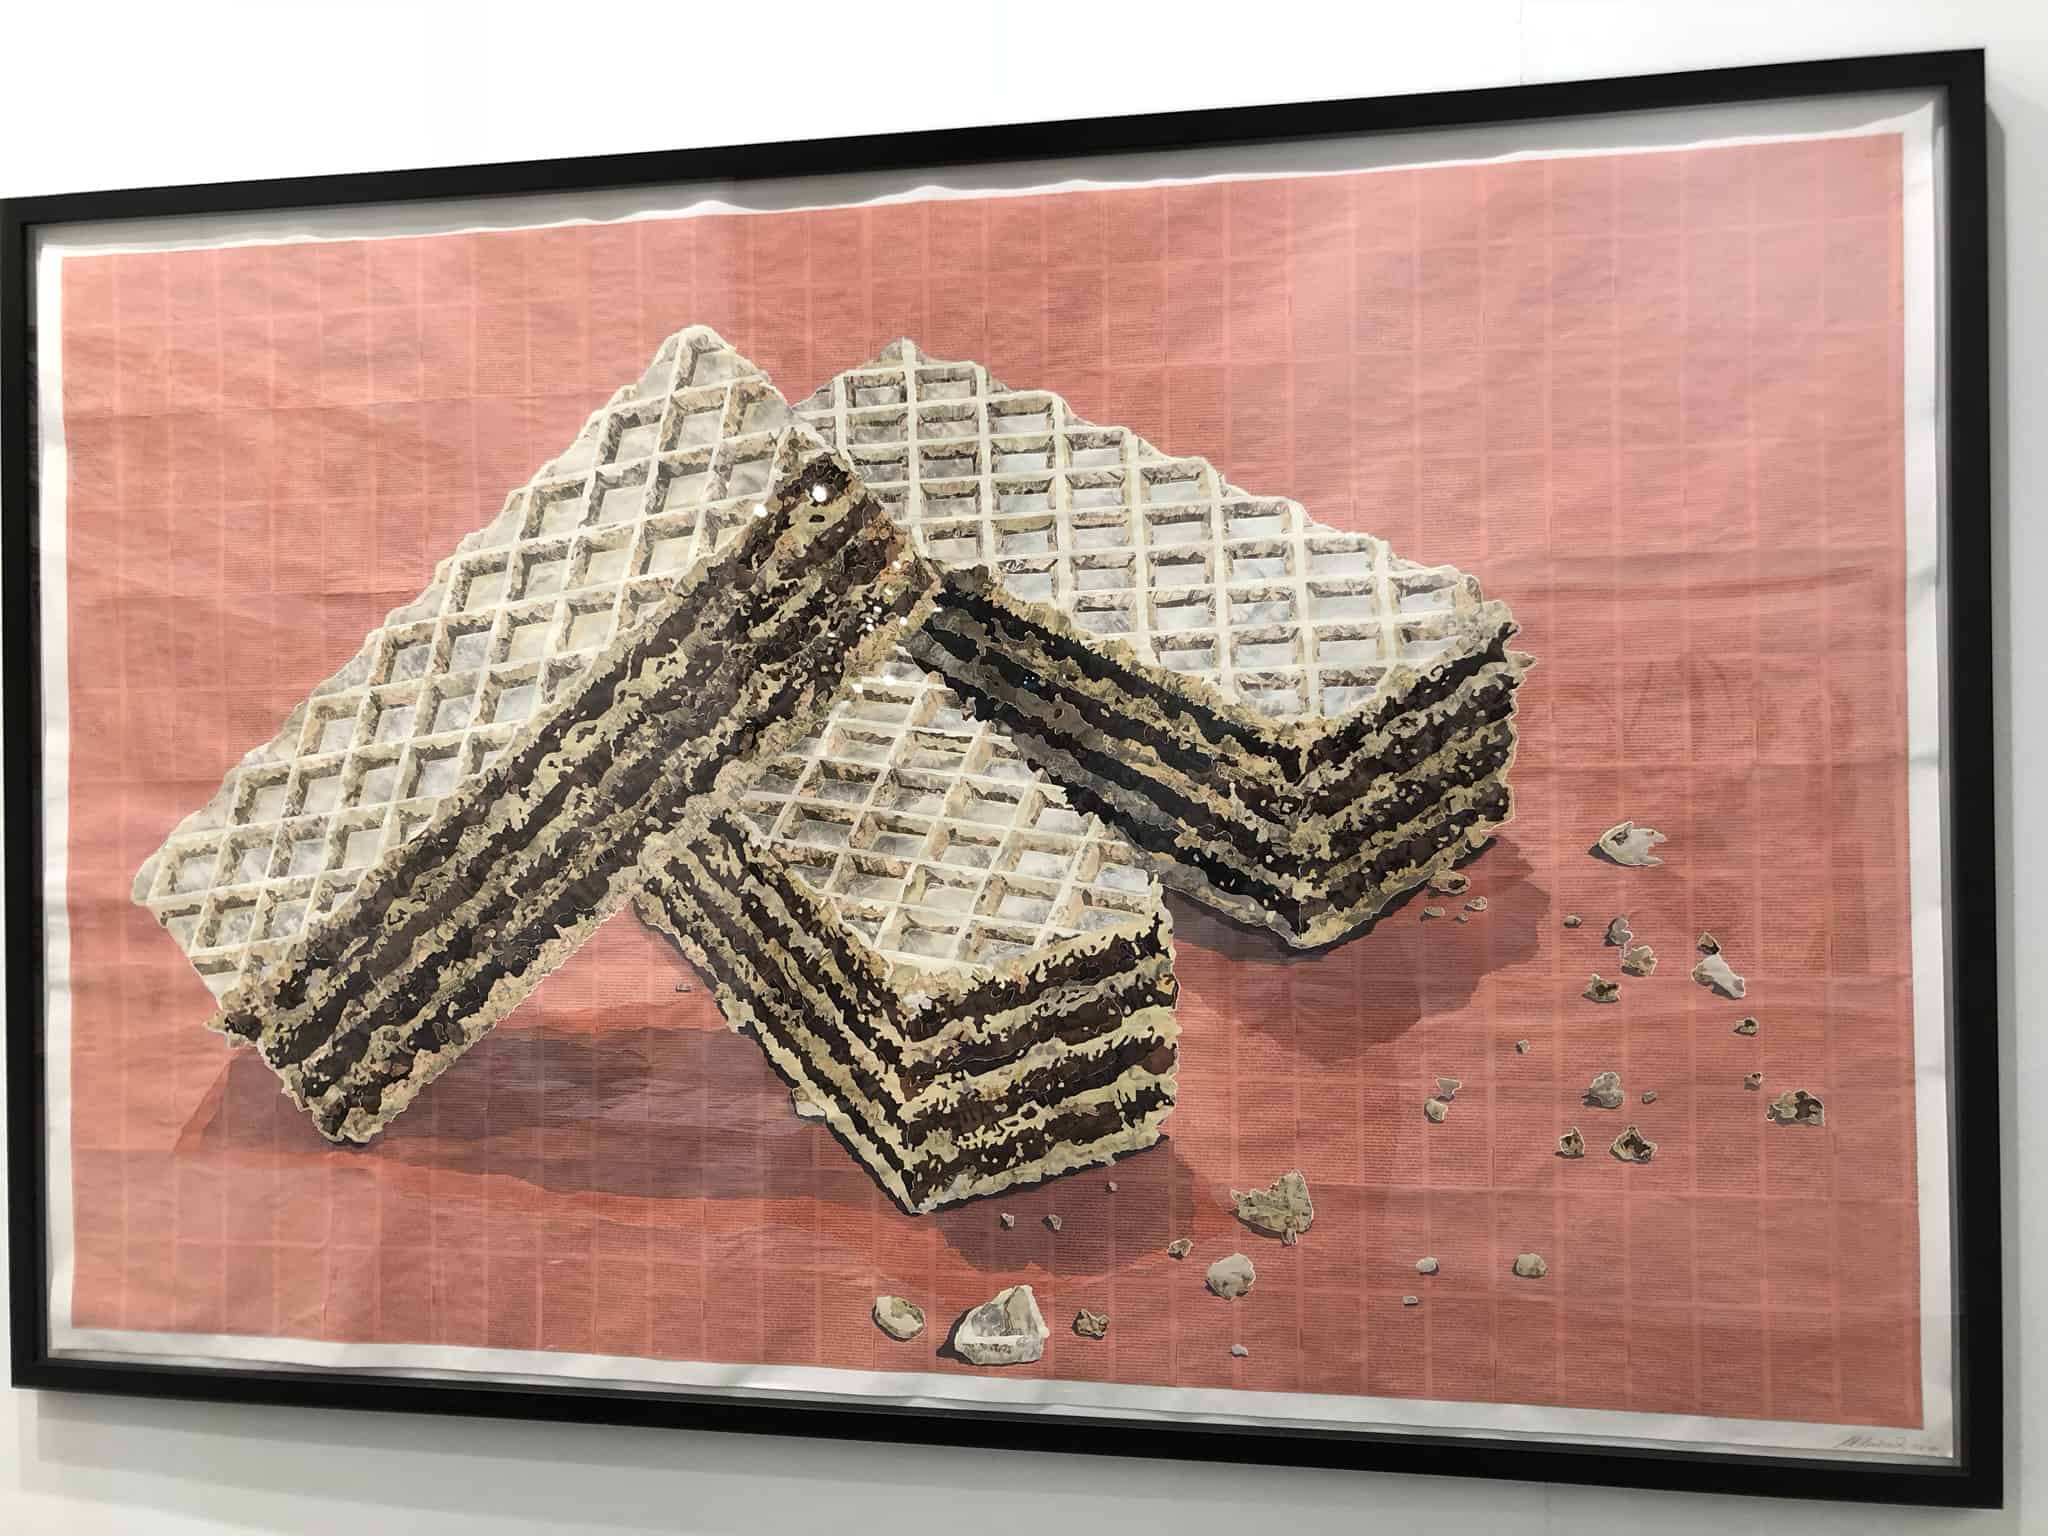 ARCO 2019: La alimentación en tres obras de arte contemporáneas